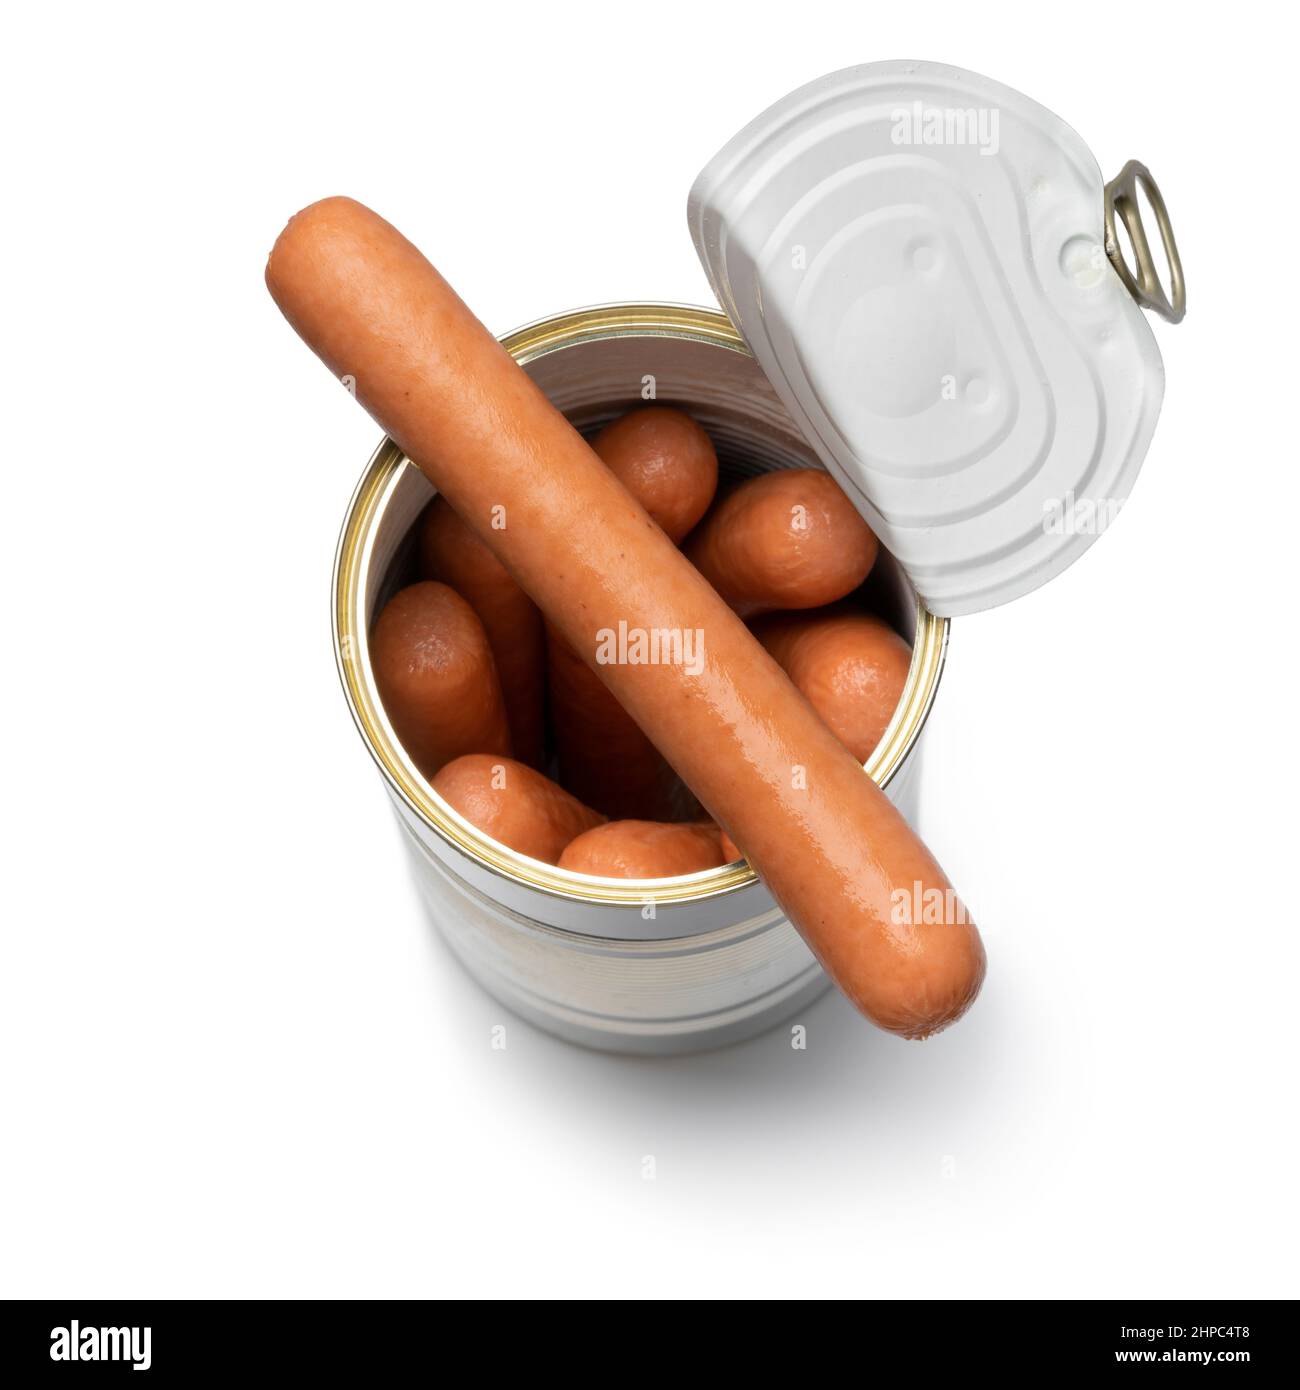 Offene MetallDose mit einer Frankfurter Würstchen aus der Nähe für einen Snack isoliert auf weißem Hintergrund Stockfoto